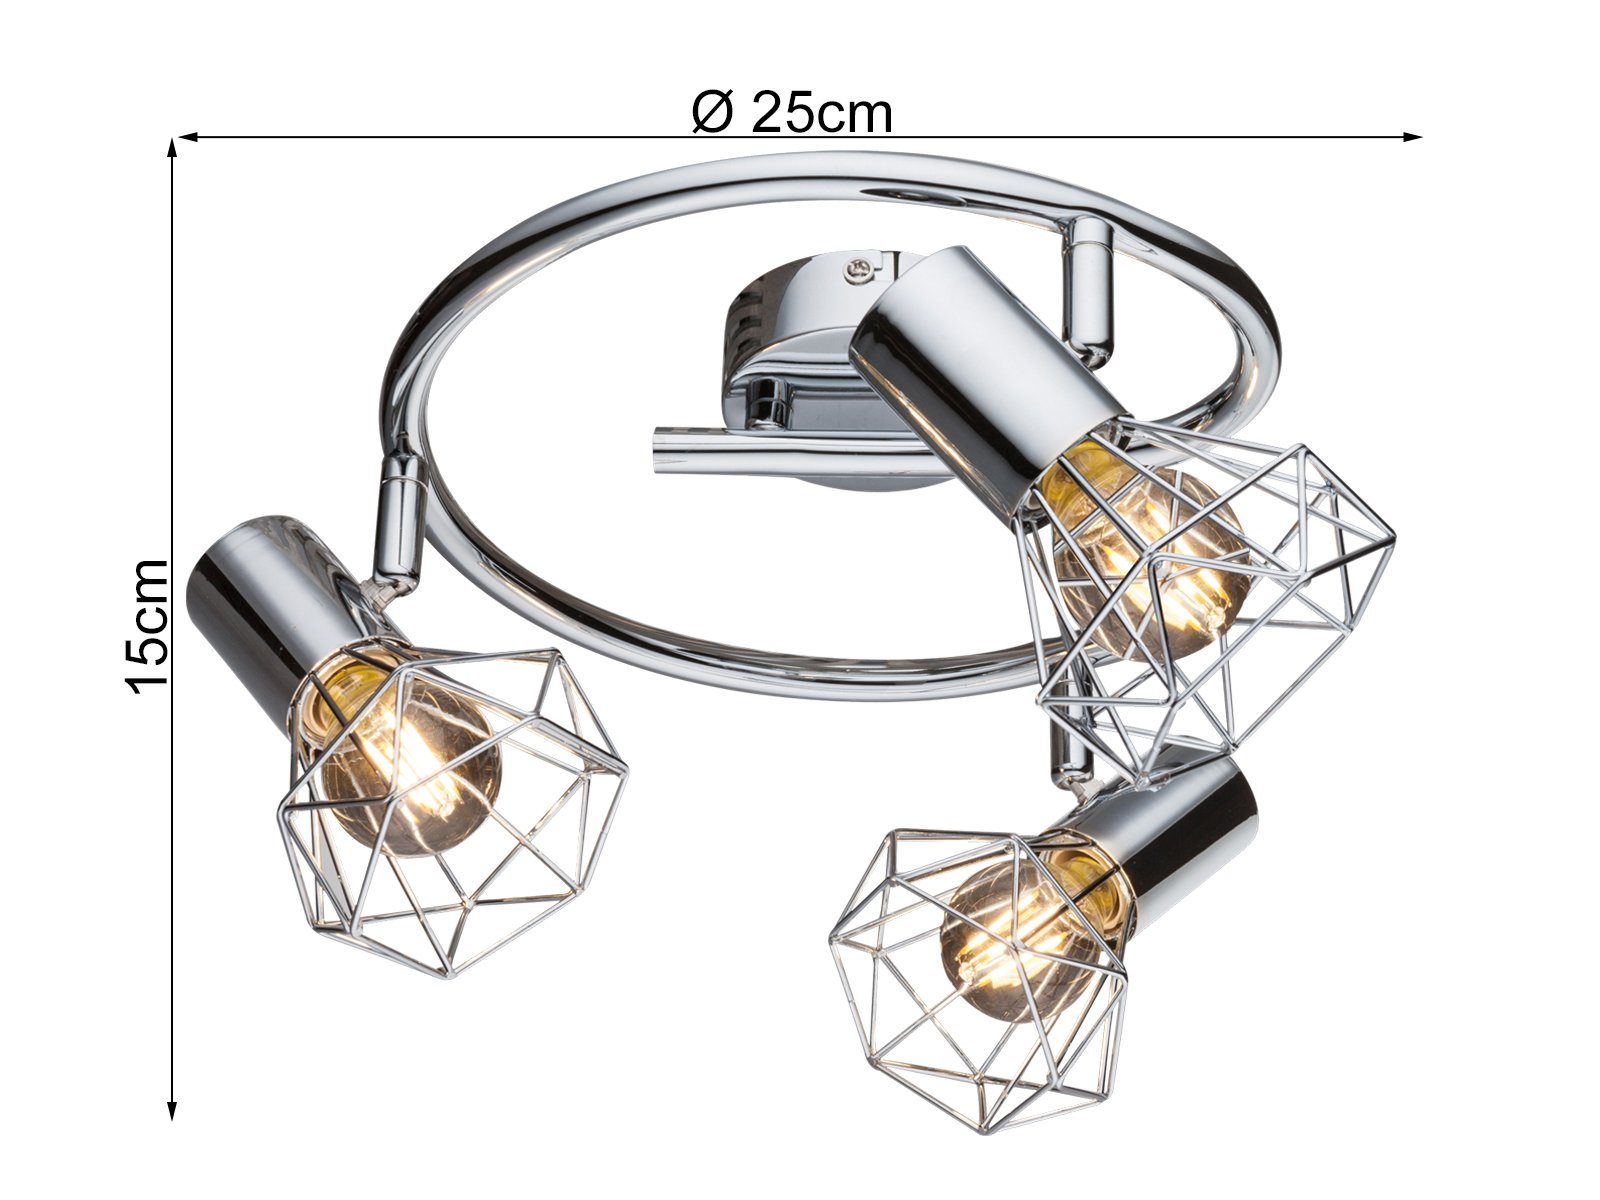 Gitter-lampe LED Esstisch-lampe Ø25cm warmweiß, meineWunschleuchte Industrial Style Deckenstrahler, Industriedesign, wechselbar,